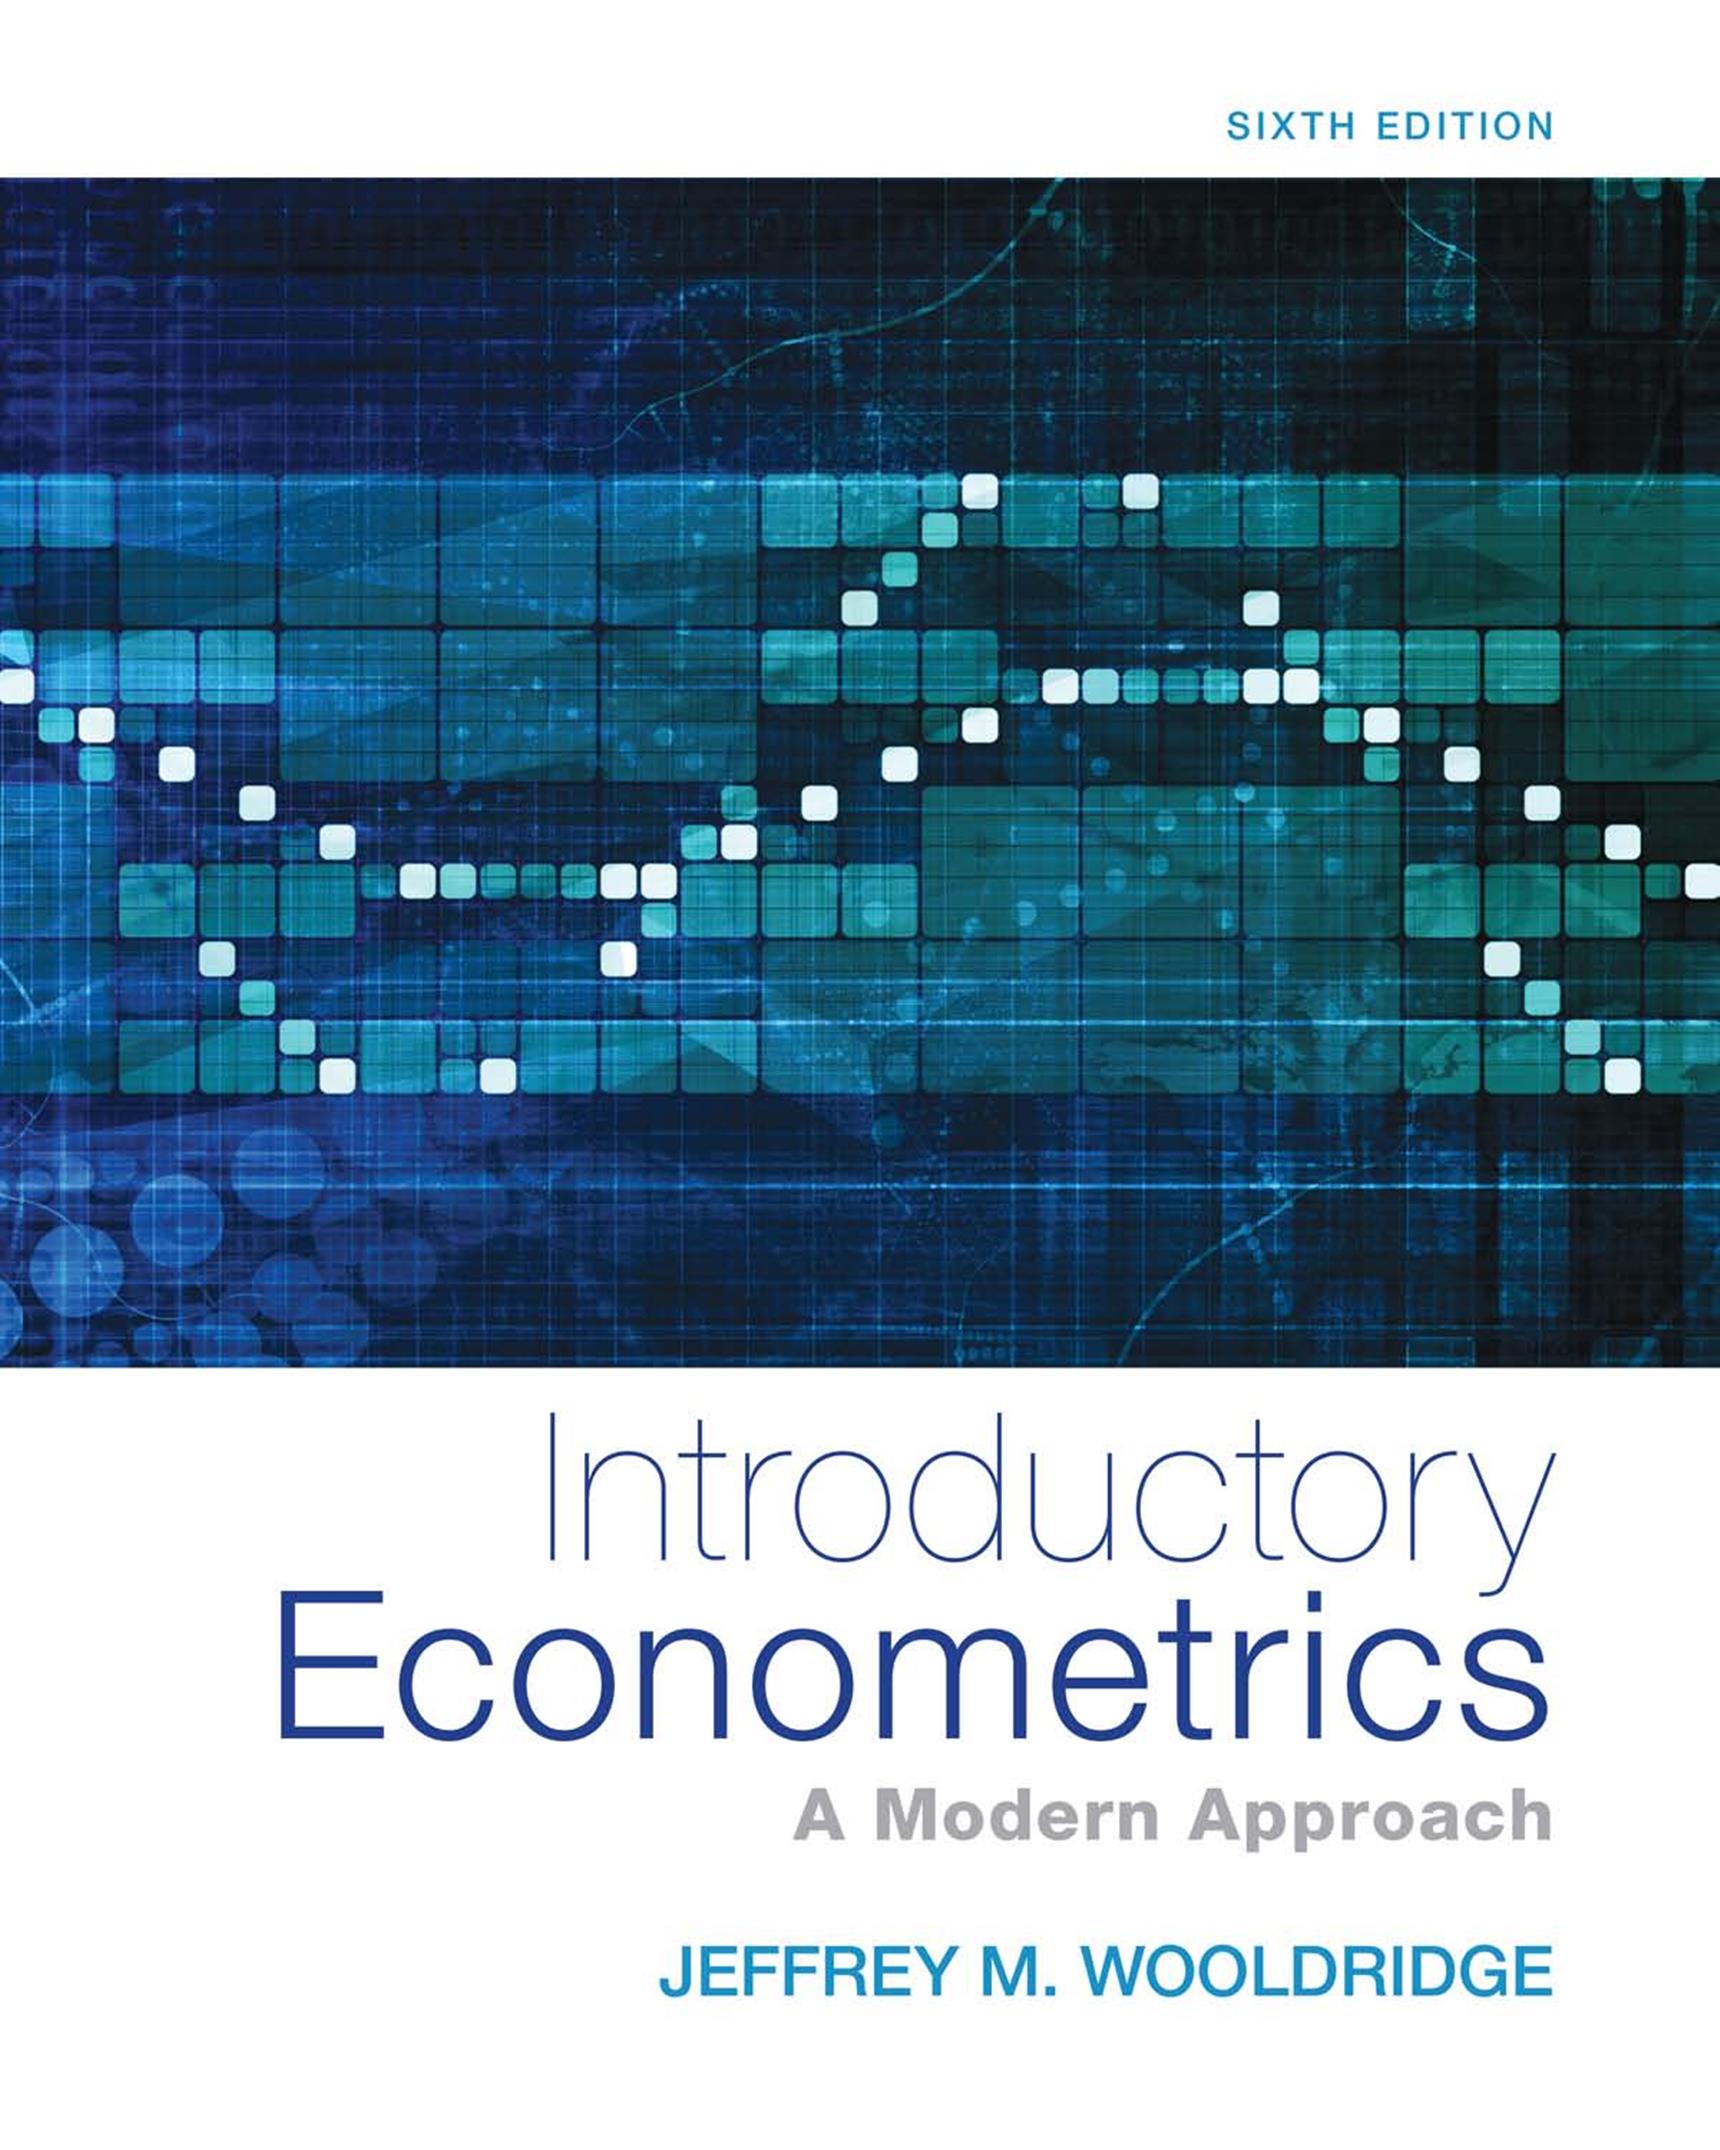 电子书Introductory econometrics A Modern ApproAch《计量经济学导论：现代方法（第六版）》_文库报告厅